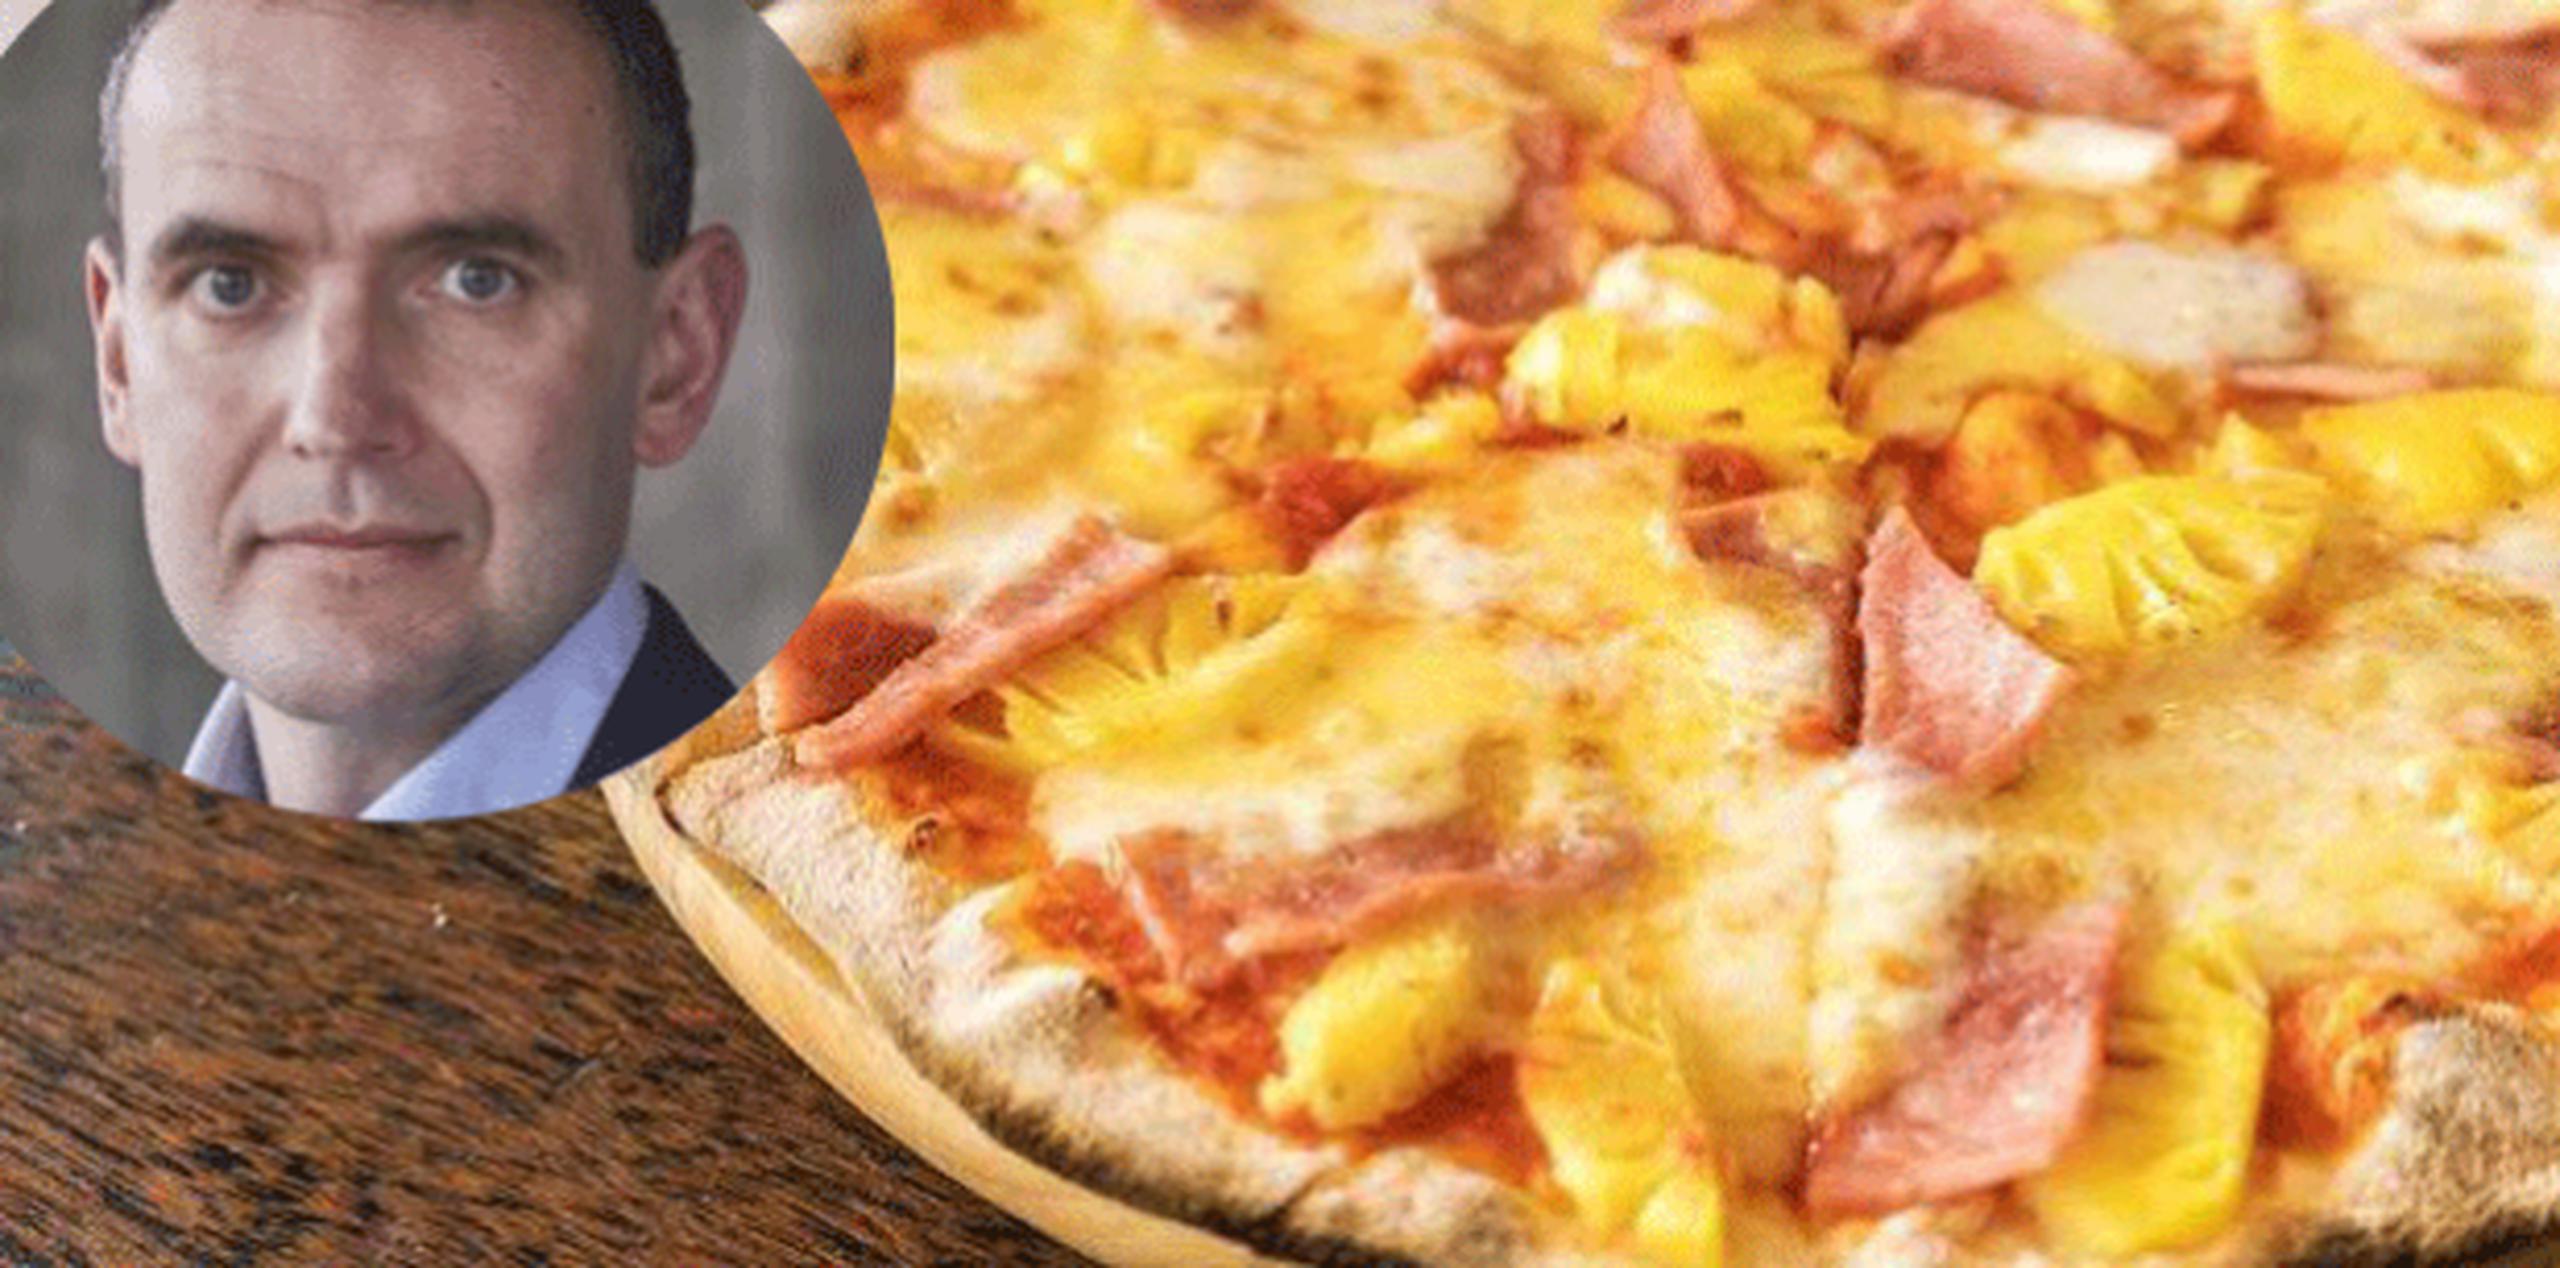 Ante la tormenta generada en medios sociales, Johannesson publicó un comunicado en Facebook destacando que no tiene potestad para prohibir la presencia de la piña en la pizza. (Twitter)